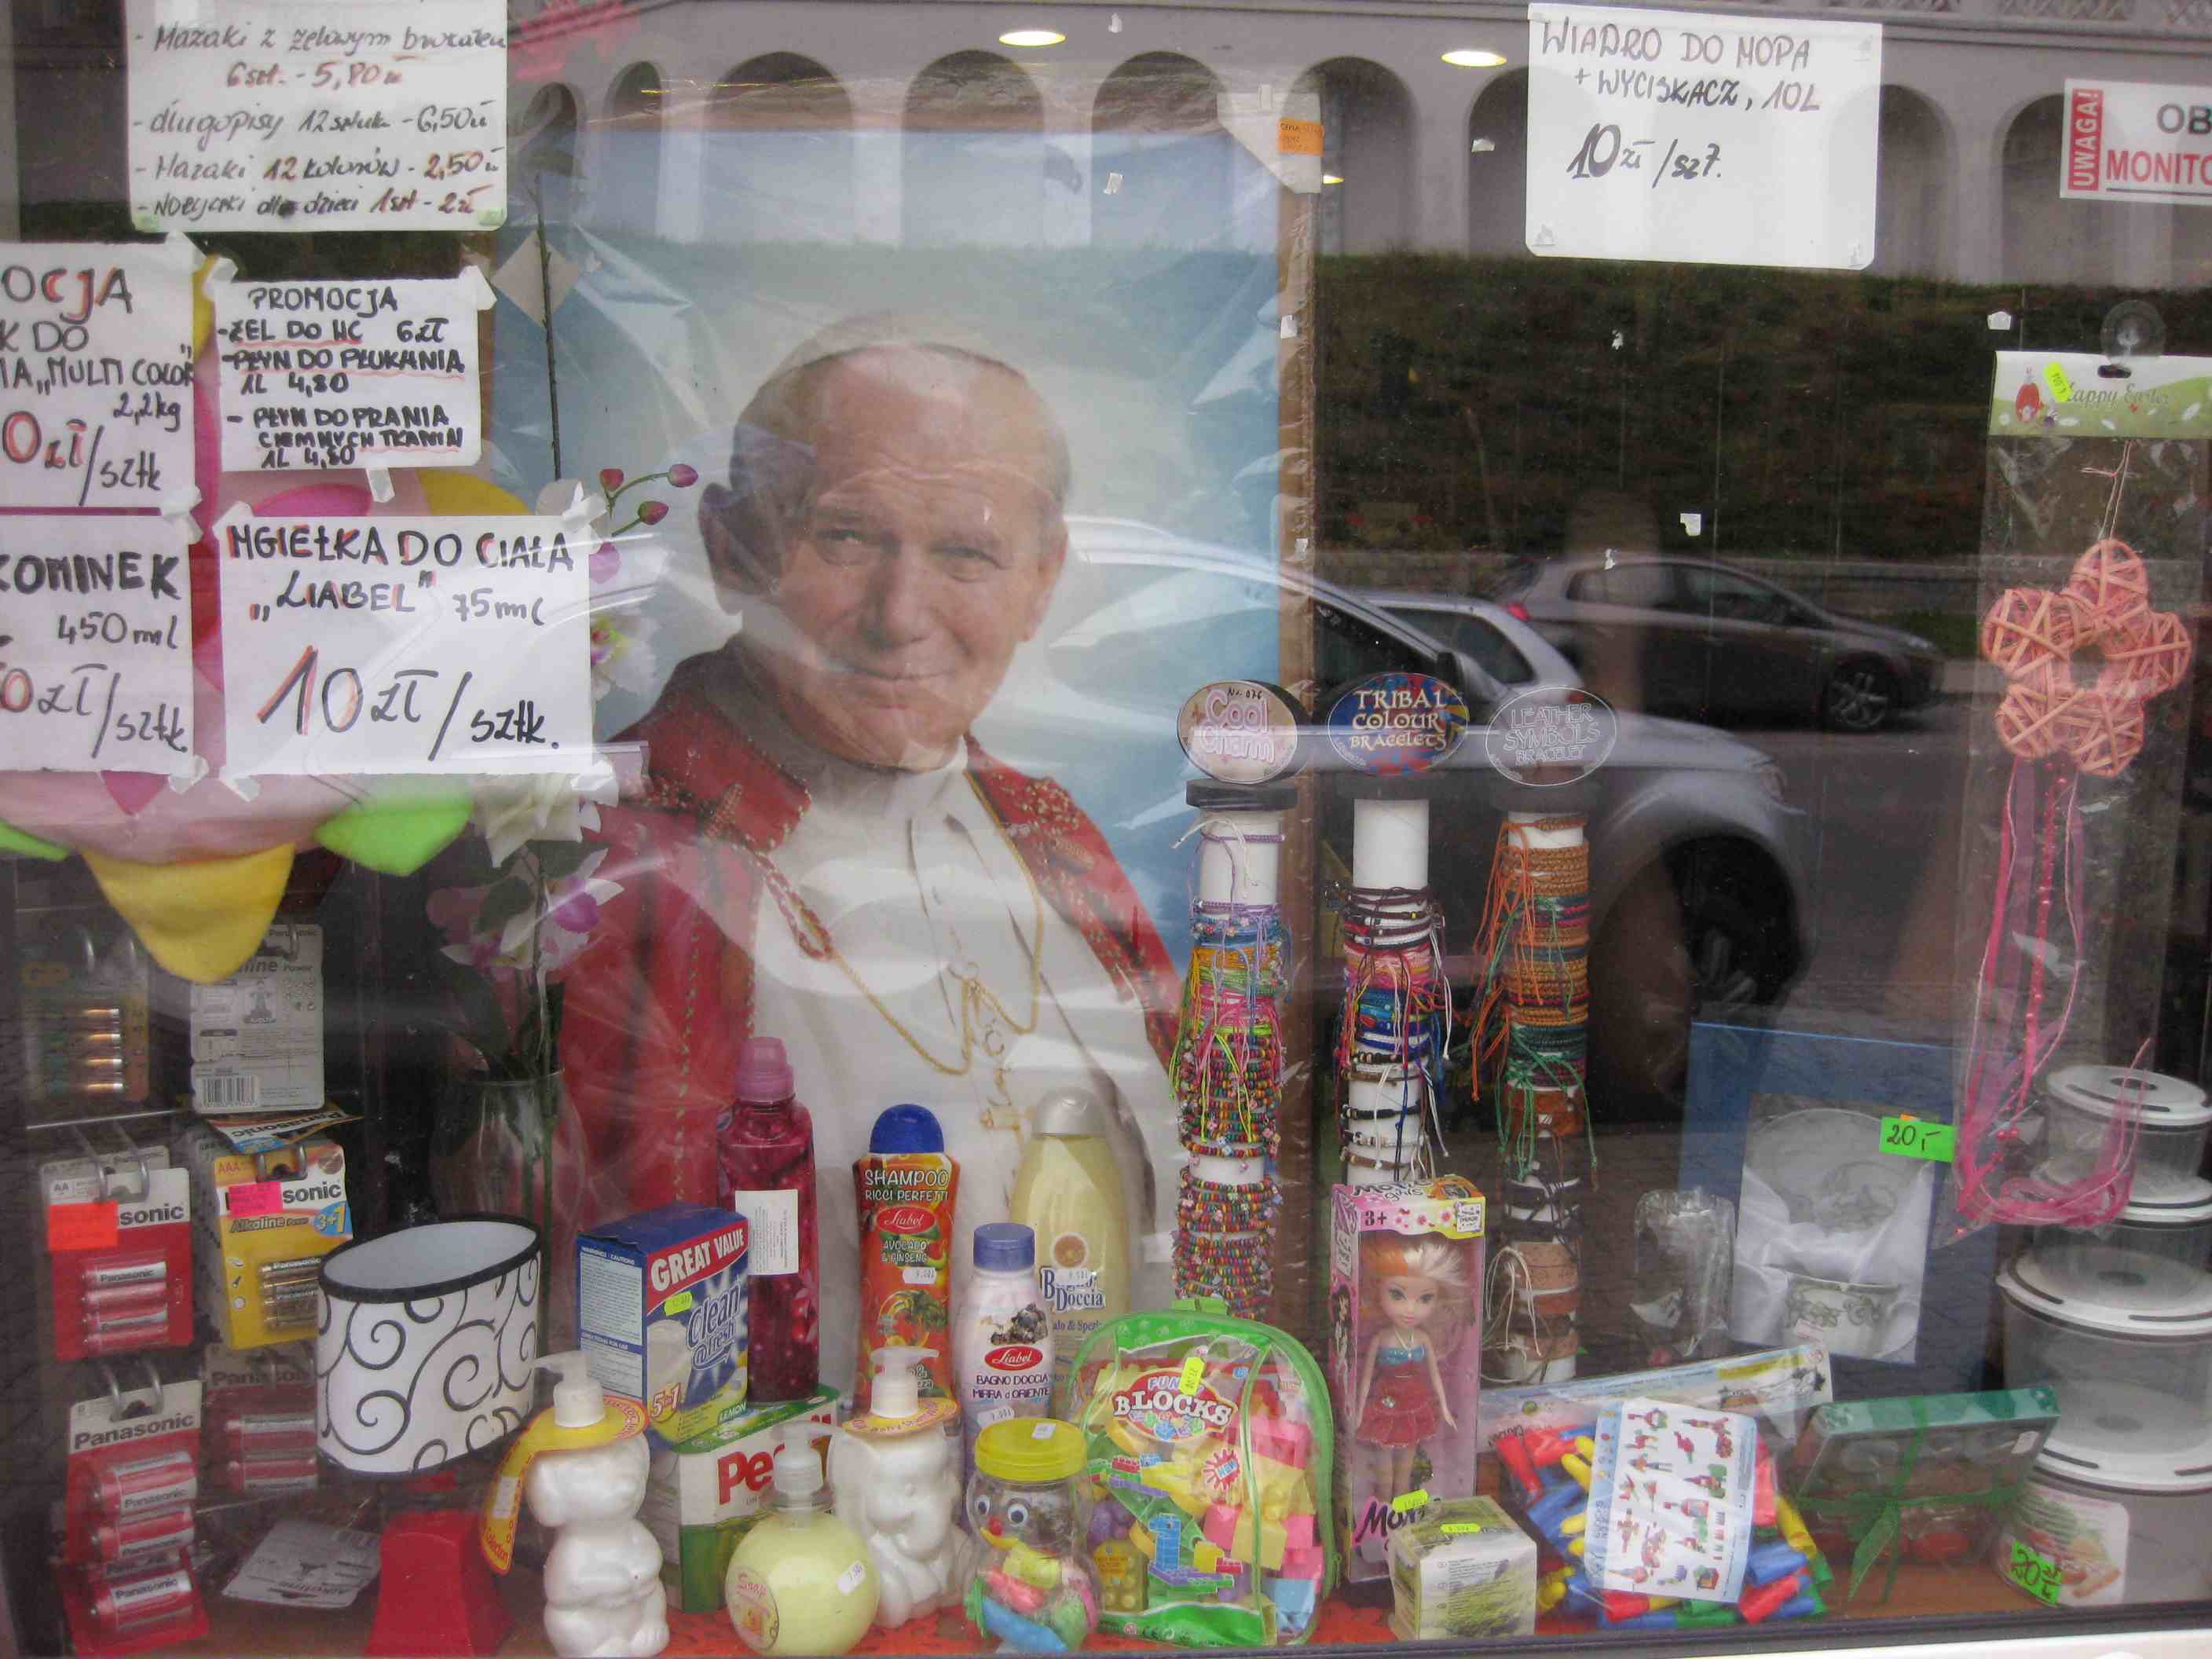 Shop window in Bialystok, Poland